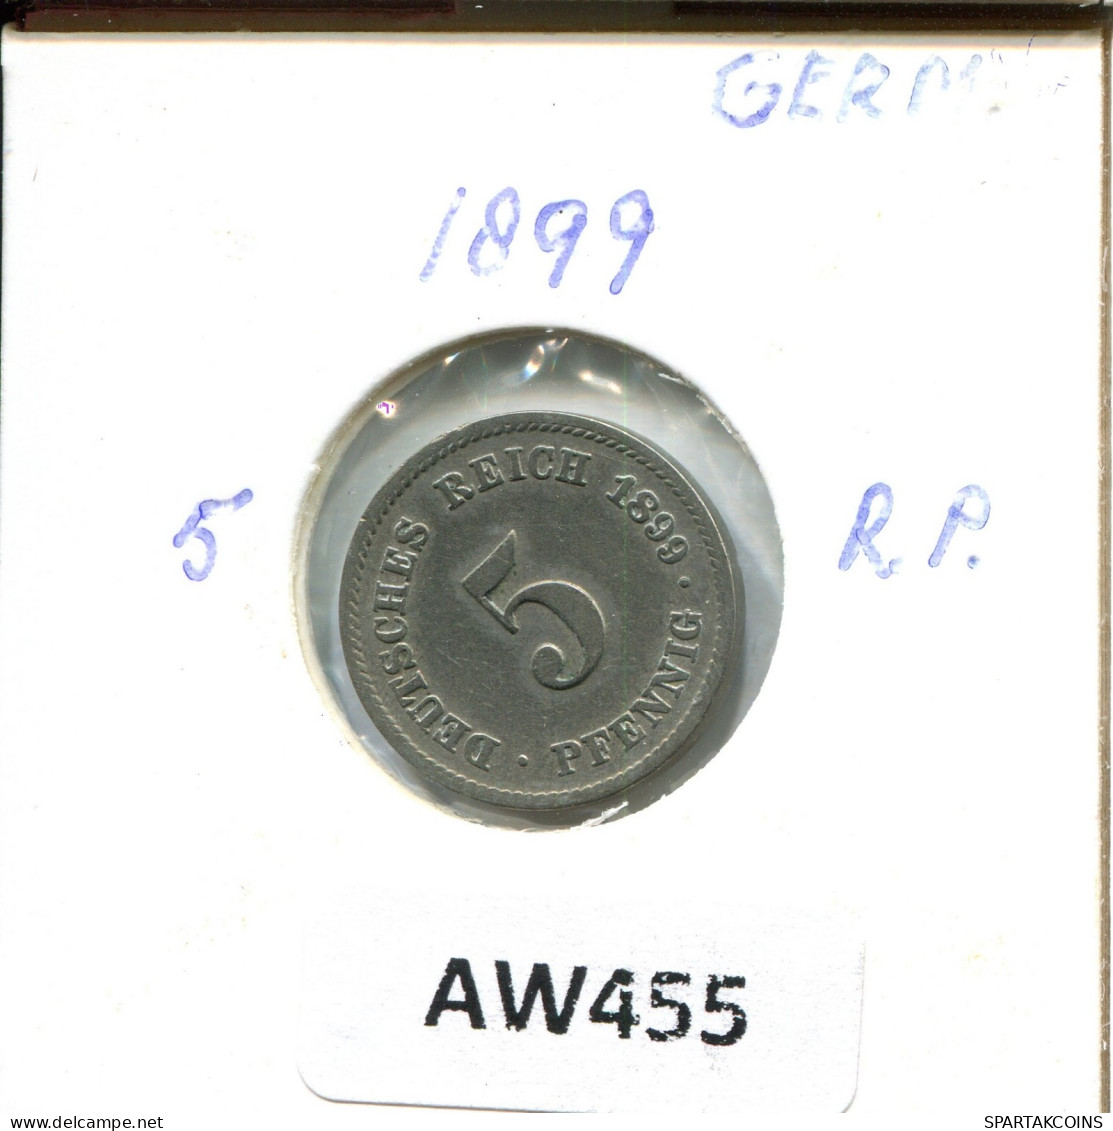 5 PFENNIG 1899 F GERMANY Coin #AW455.U.A - 5 Pfennig